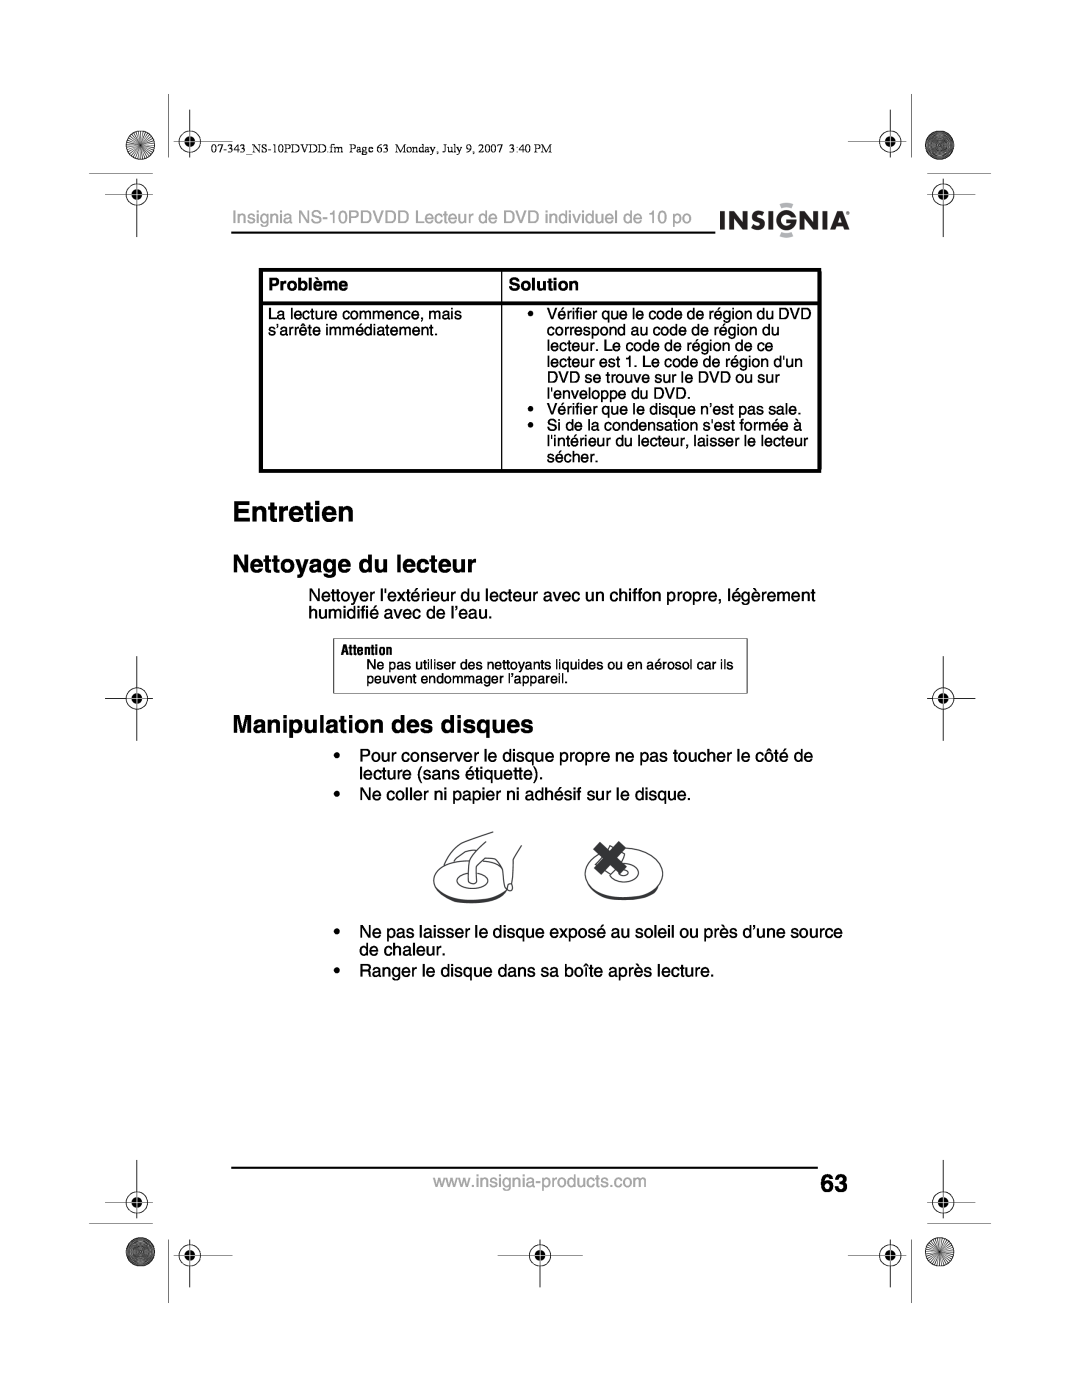 Insignia NS-10PDVDD manual Entretien, Nettoyage du lecteur, Manipulation des disques, Problème, Solution 